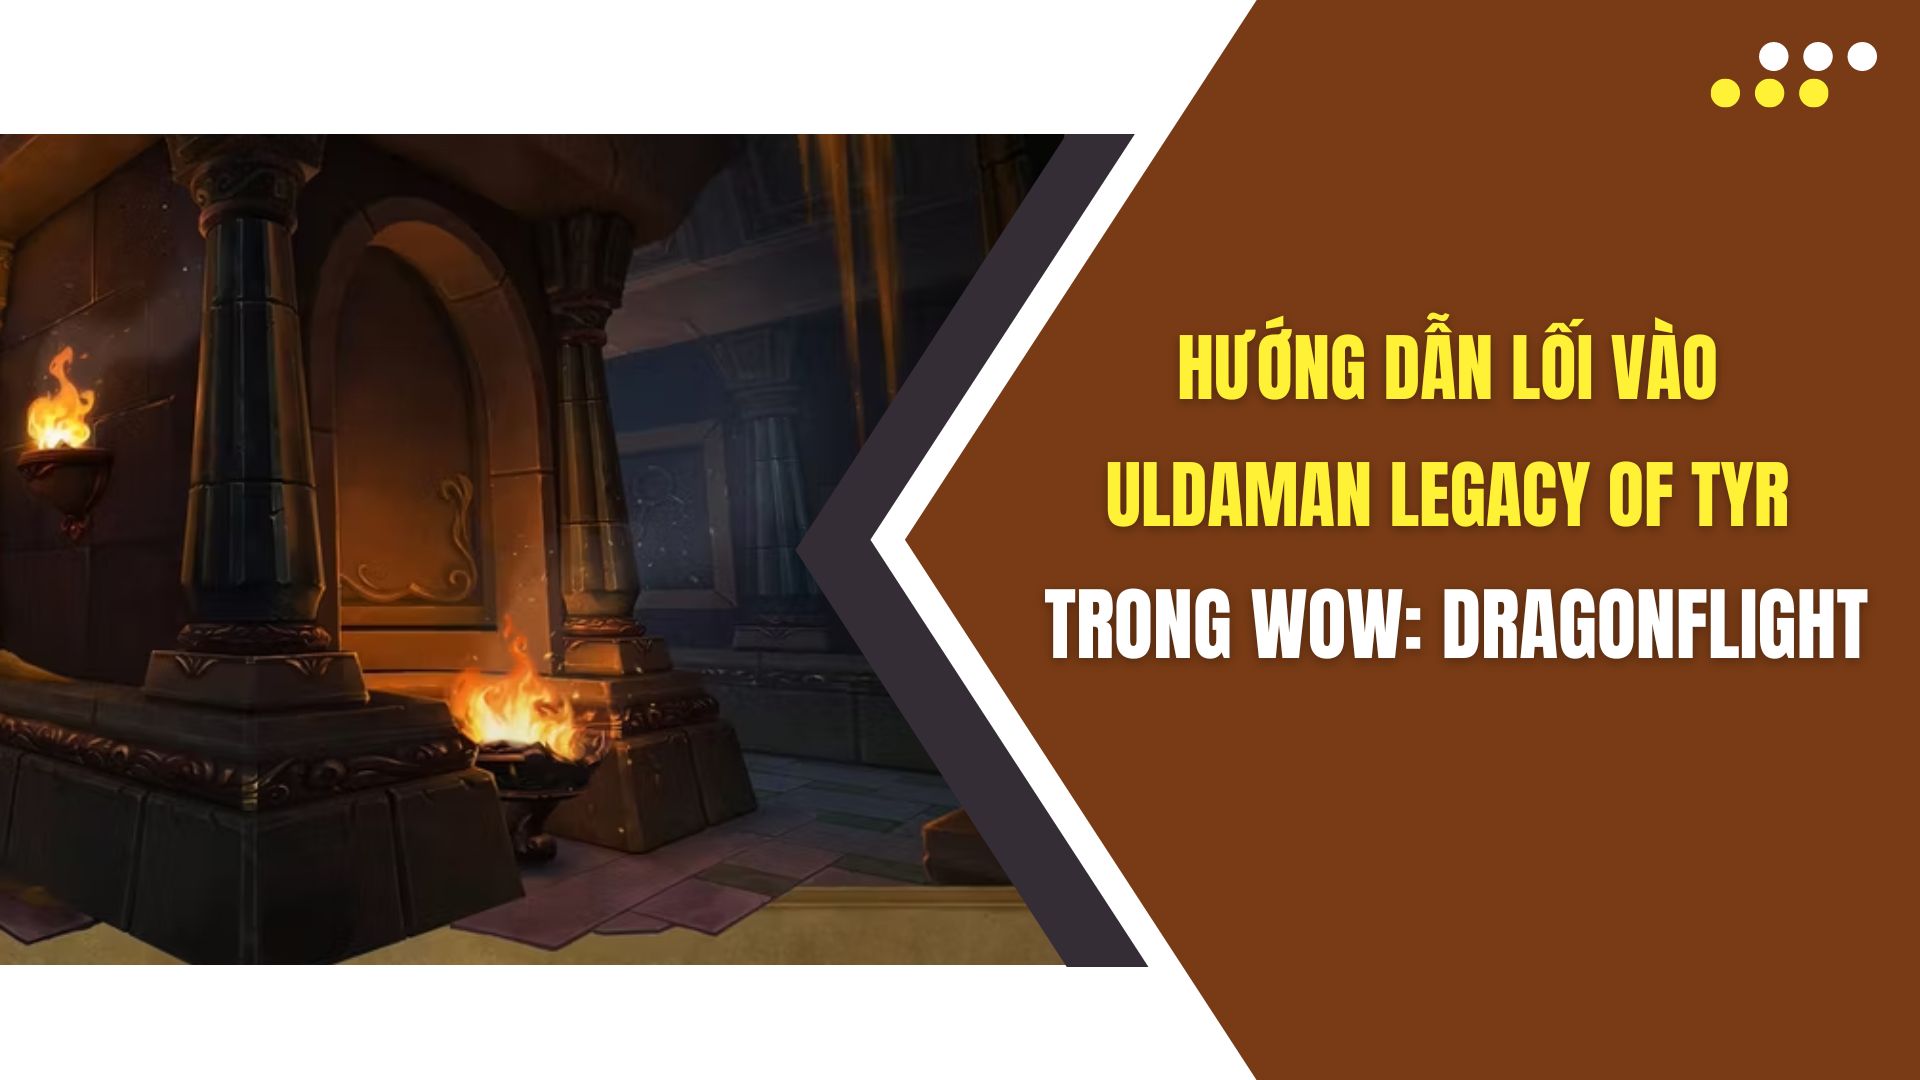 Hướng dẫn lối vào Uldaman Legacy of Tyr trong WoW Dragonflight